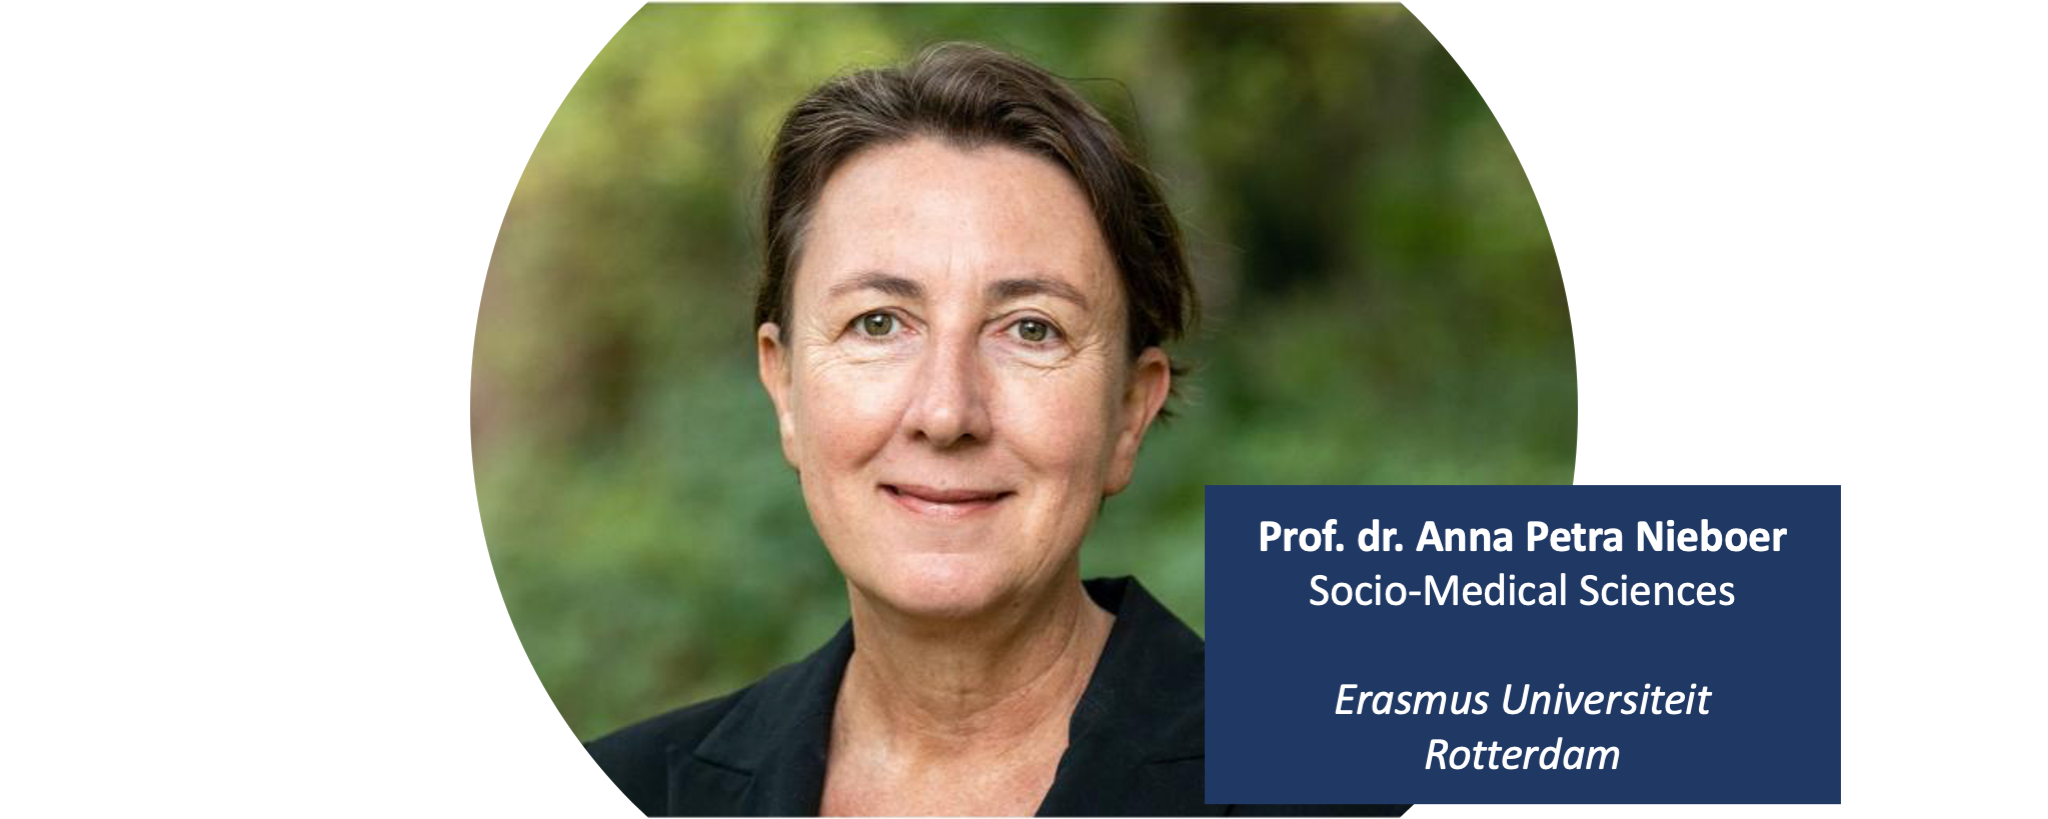 Prof. dr. Anna Petra Nieboer